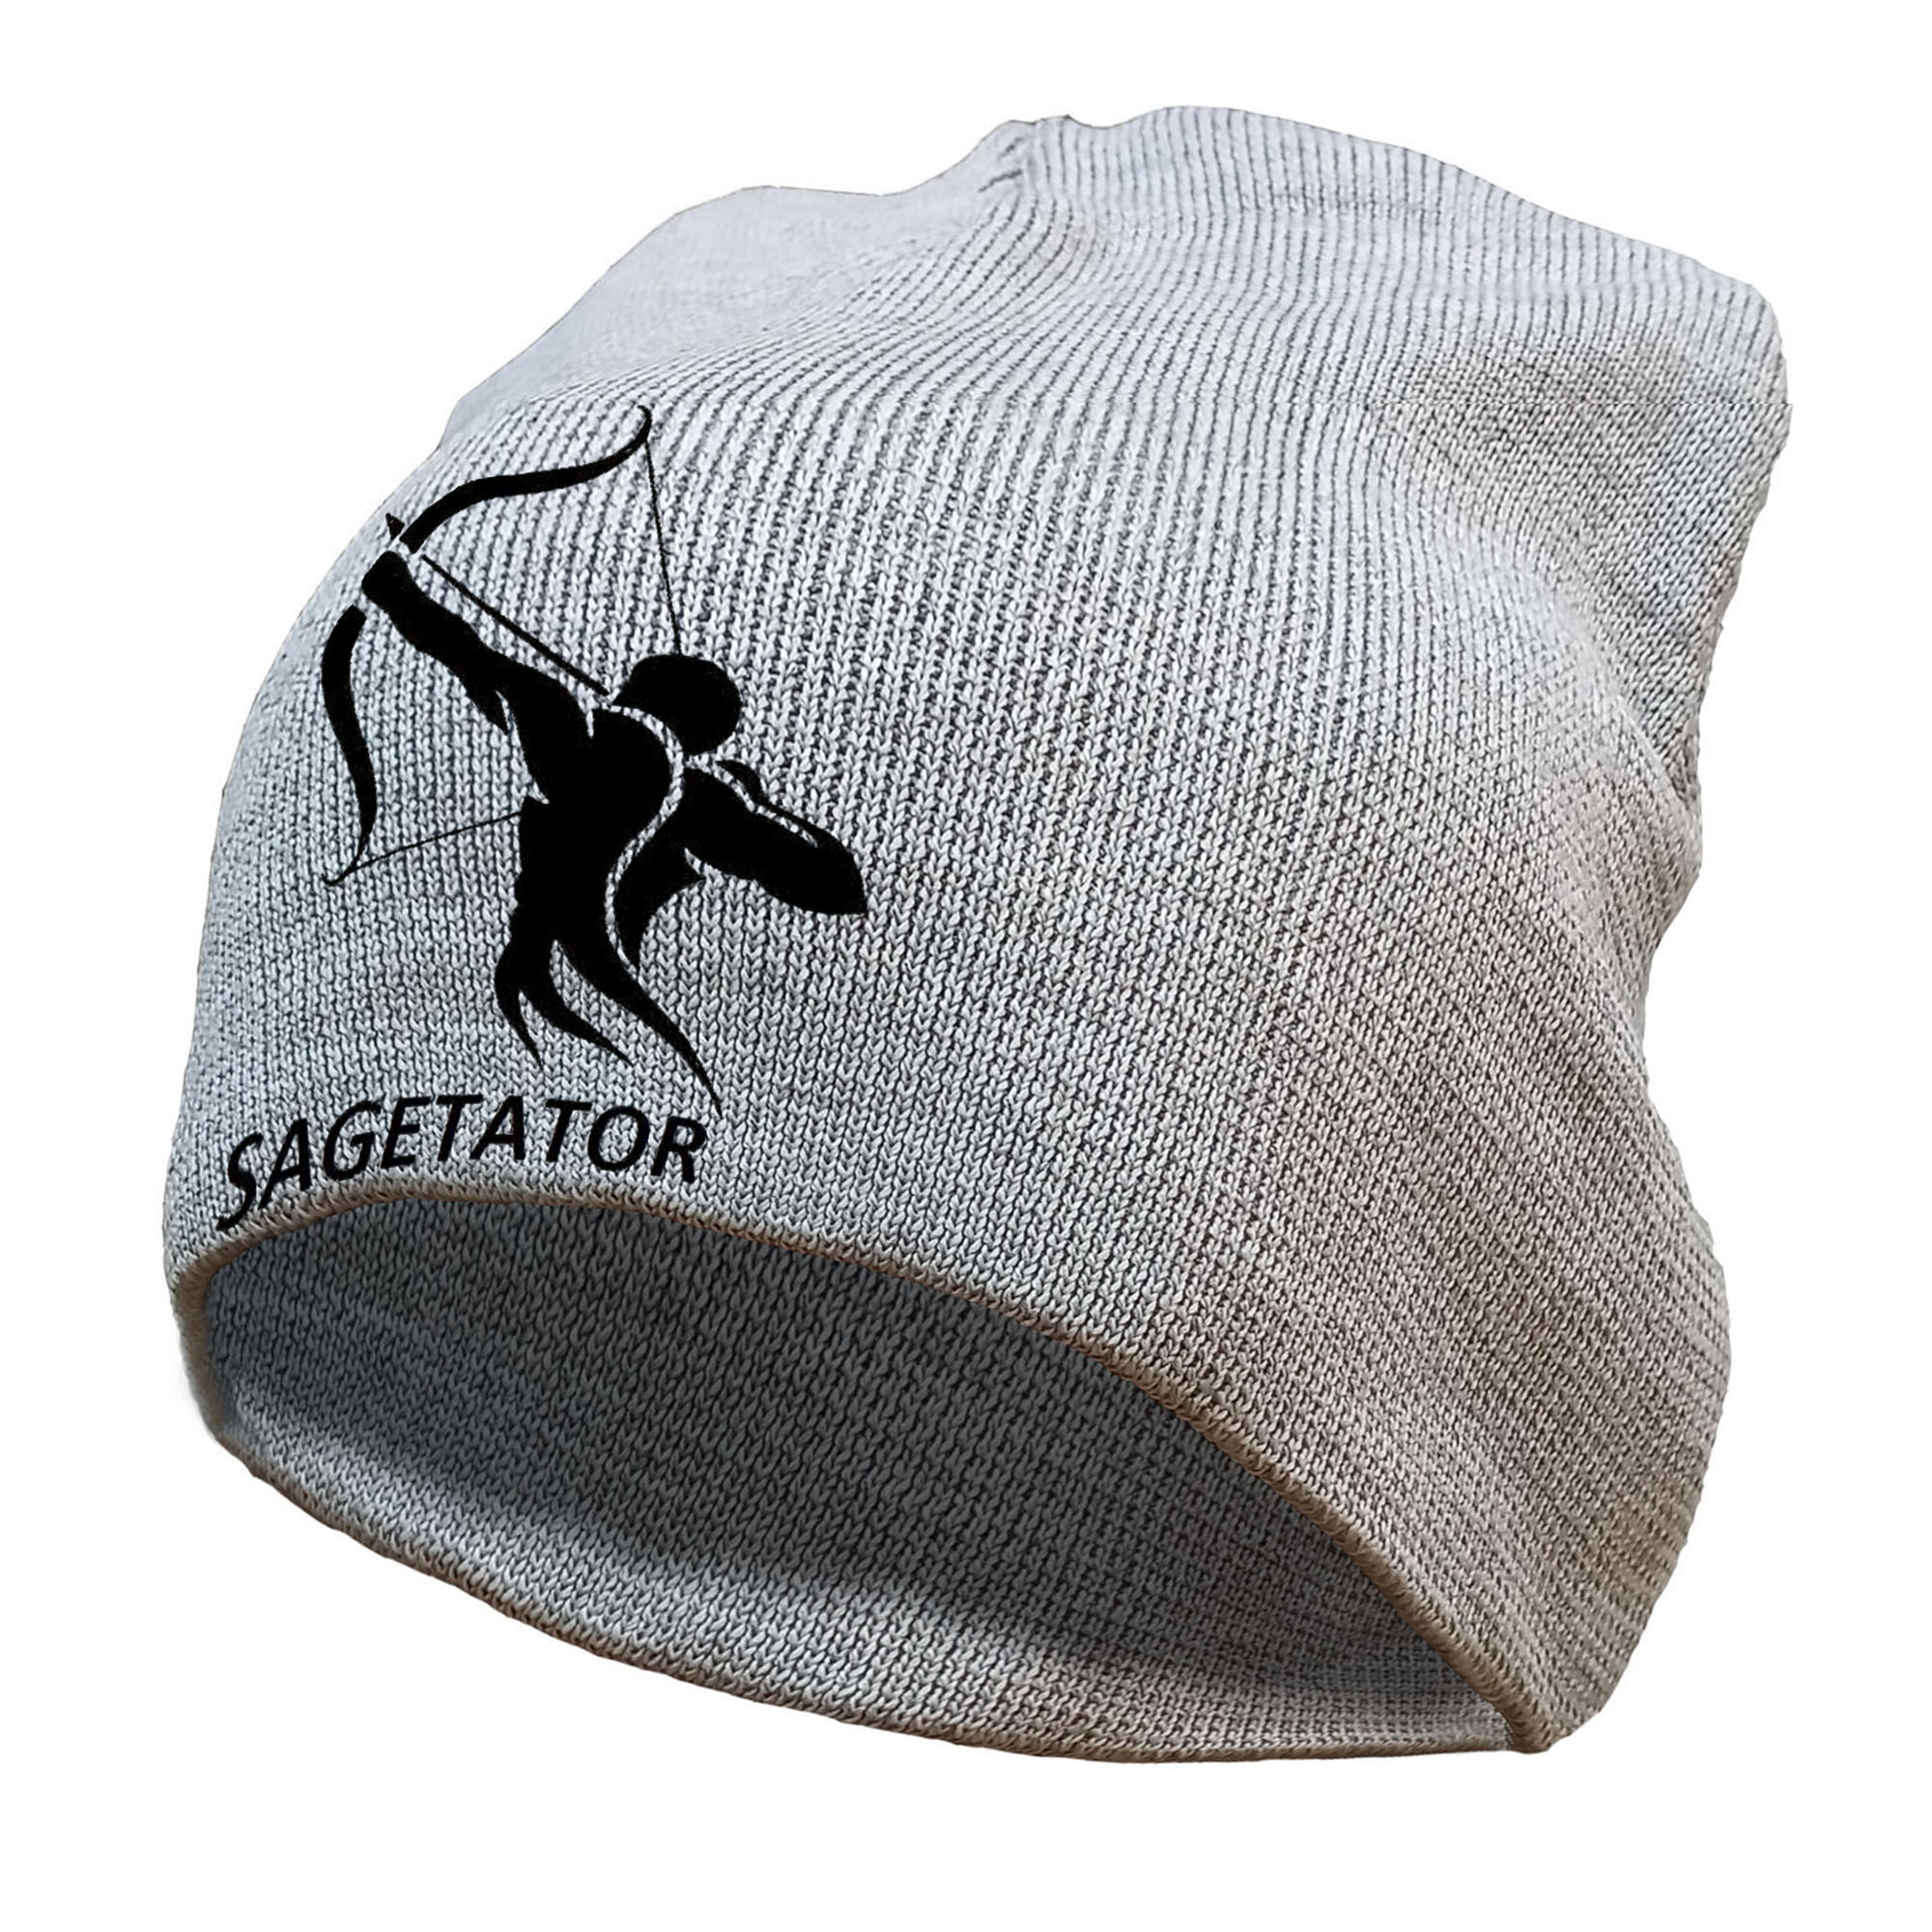 کلاه آی تمر مدل ساگاتور کد 72